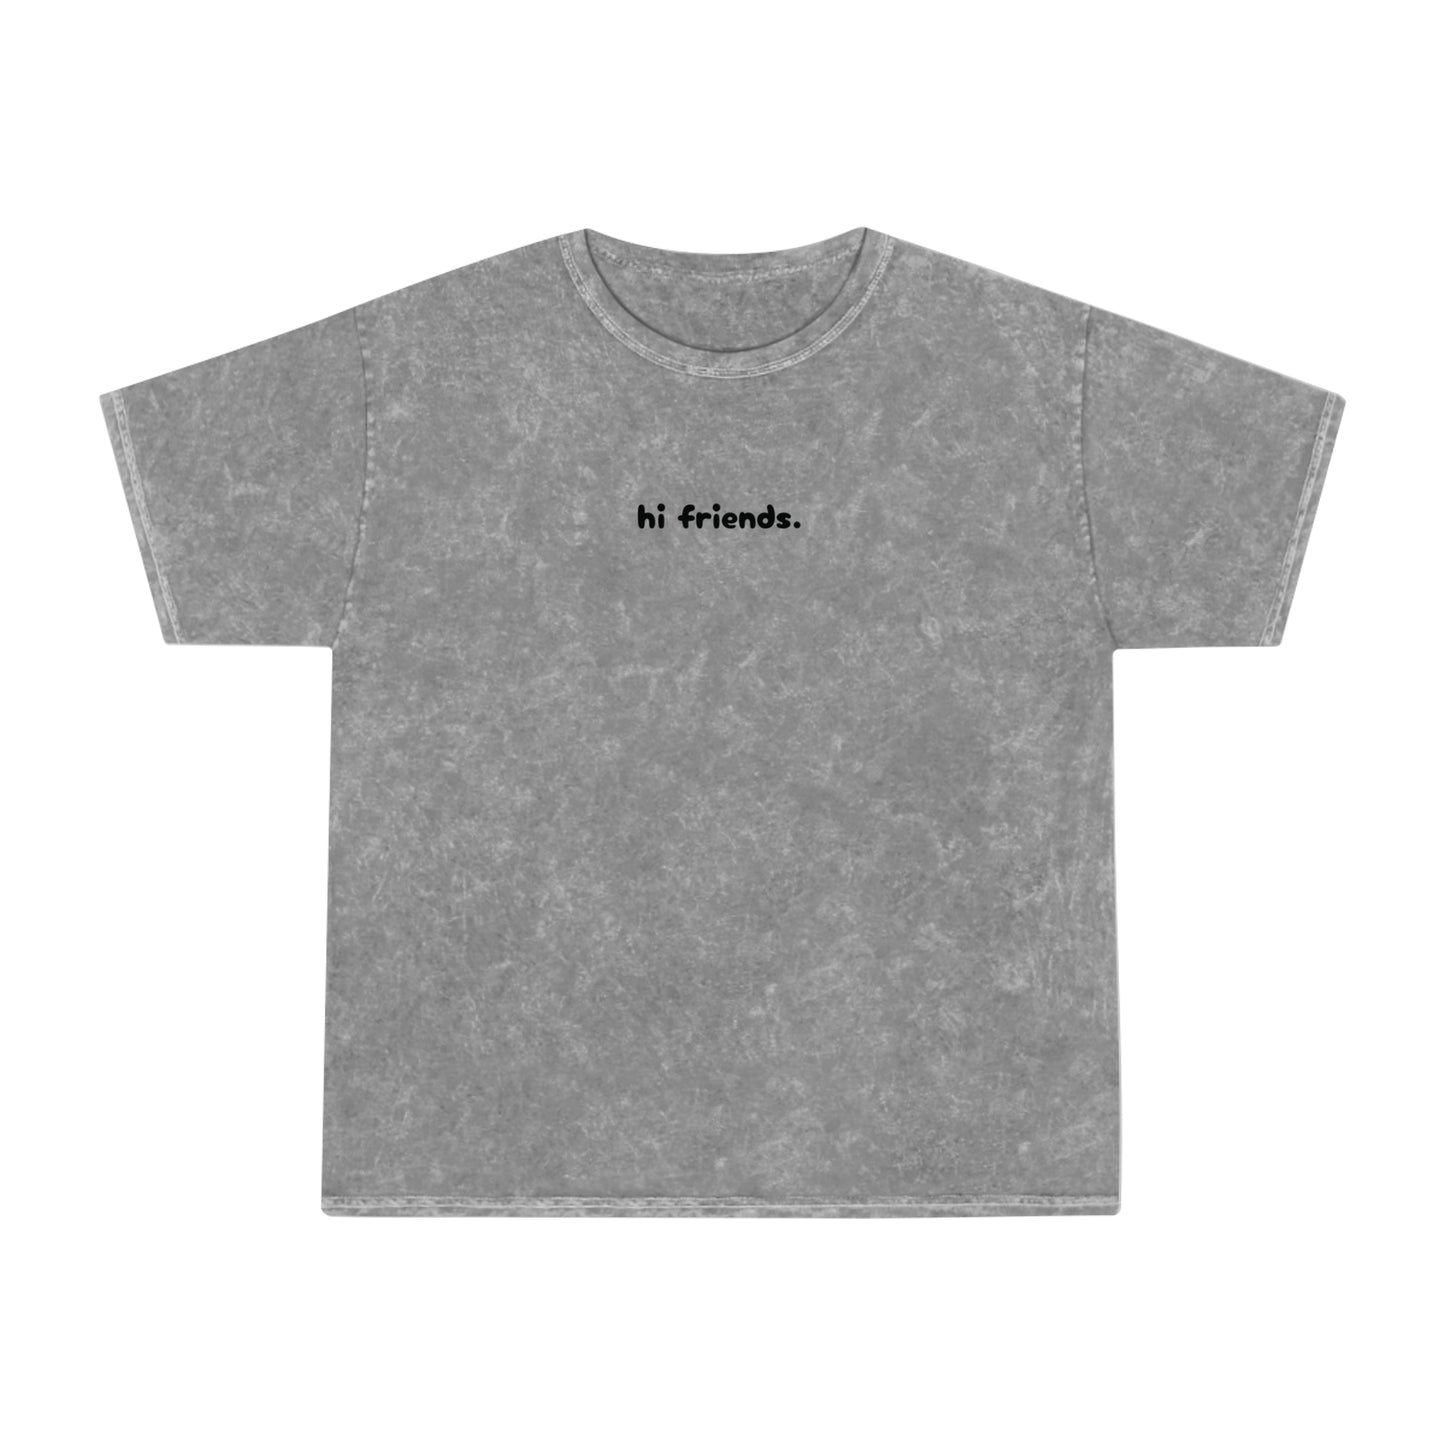 "hi friends" - Mineral Wash T-Shirt